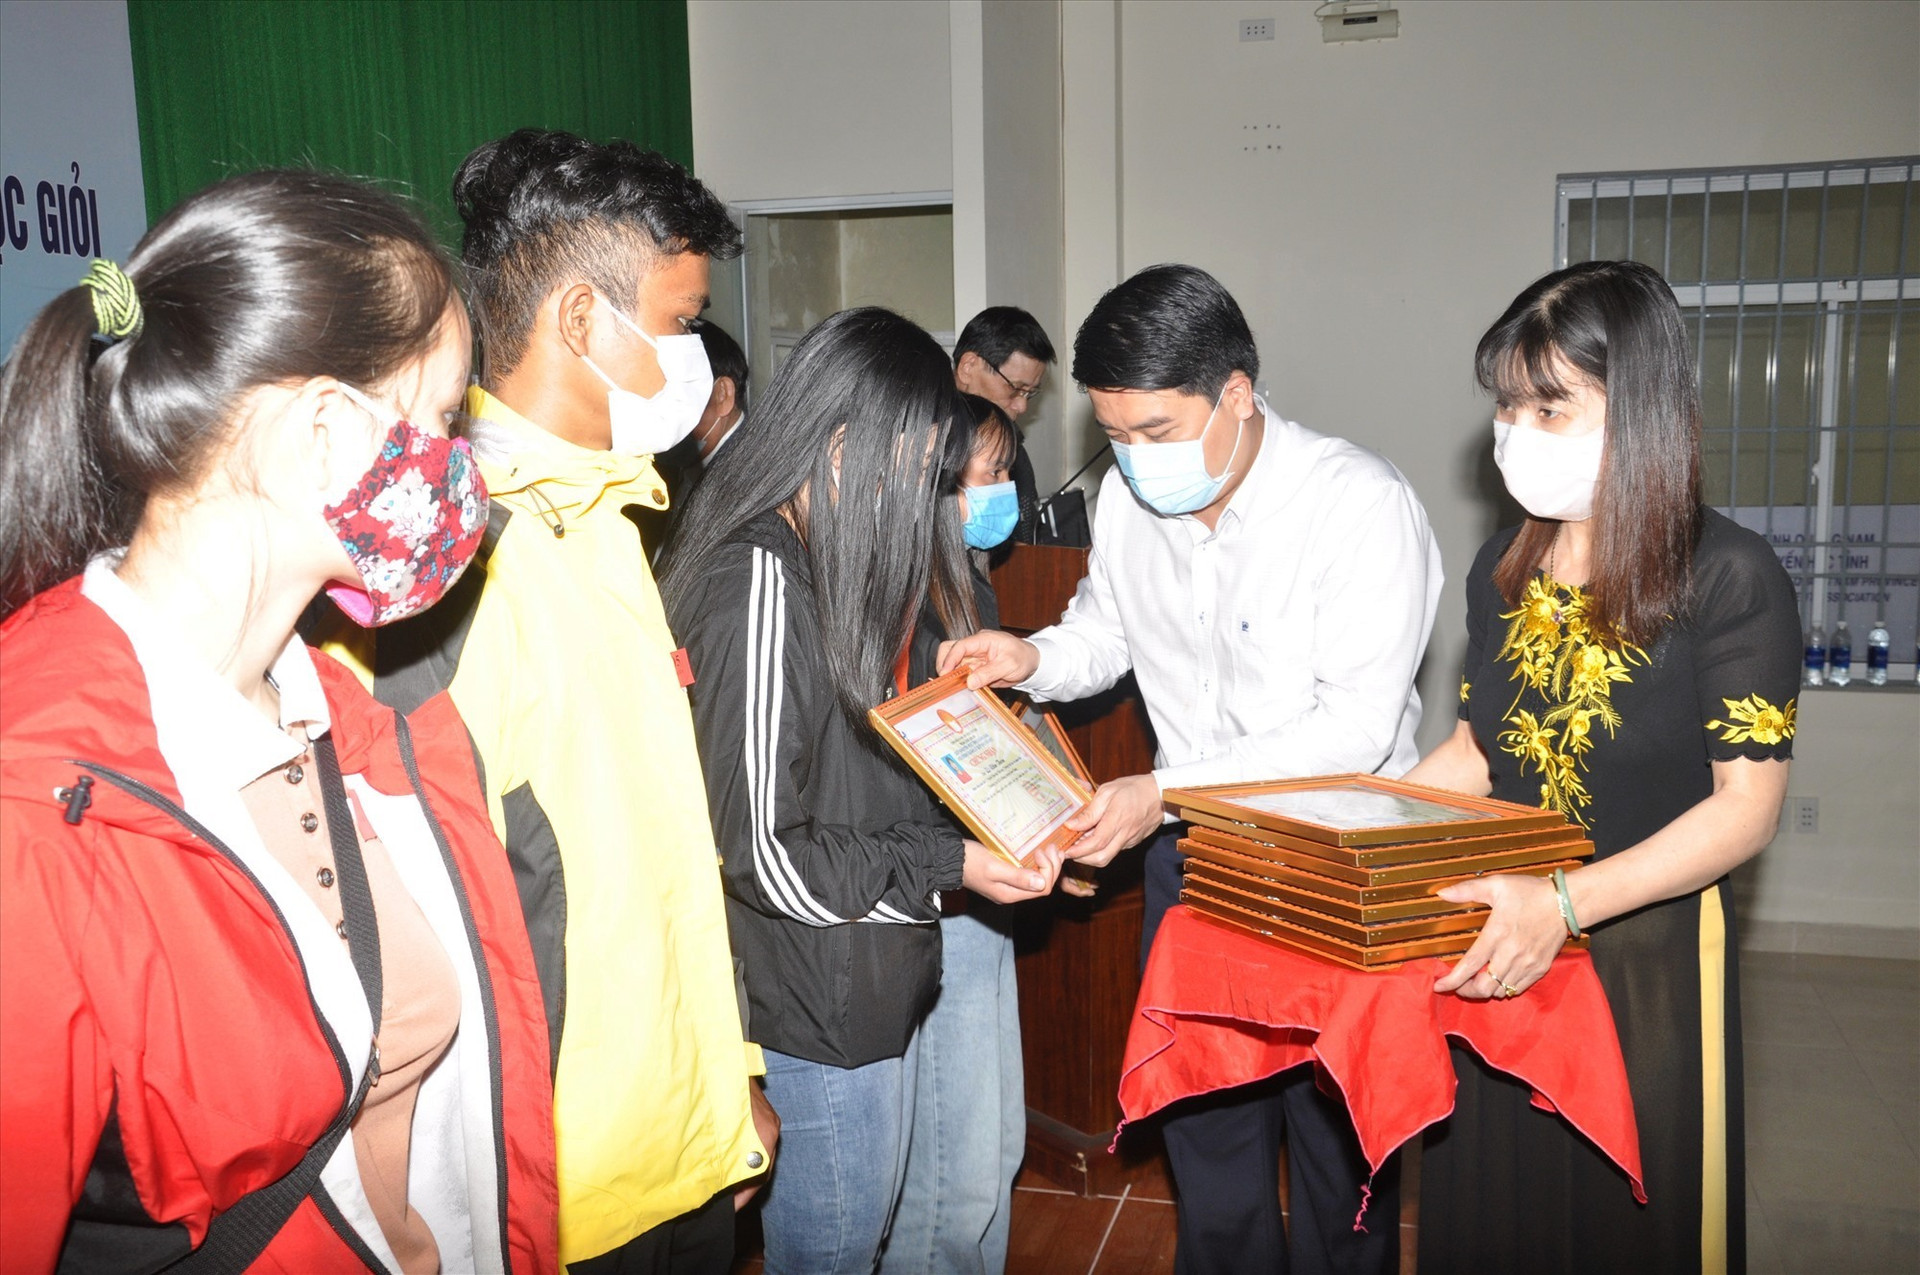 Phó Chủ tịch UBND tỉnh Trần Văn Tân trao giấy chứng nhận và học bổng khuyến học cho sinh viên nghèo học giỏi. Ảnh: X.P